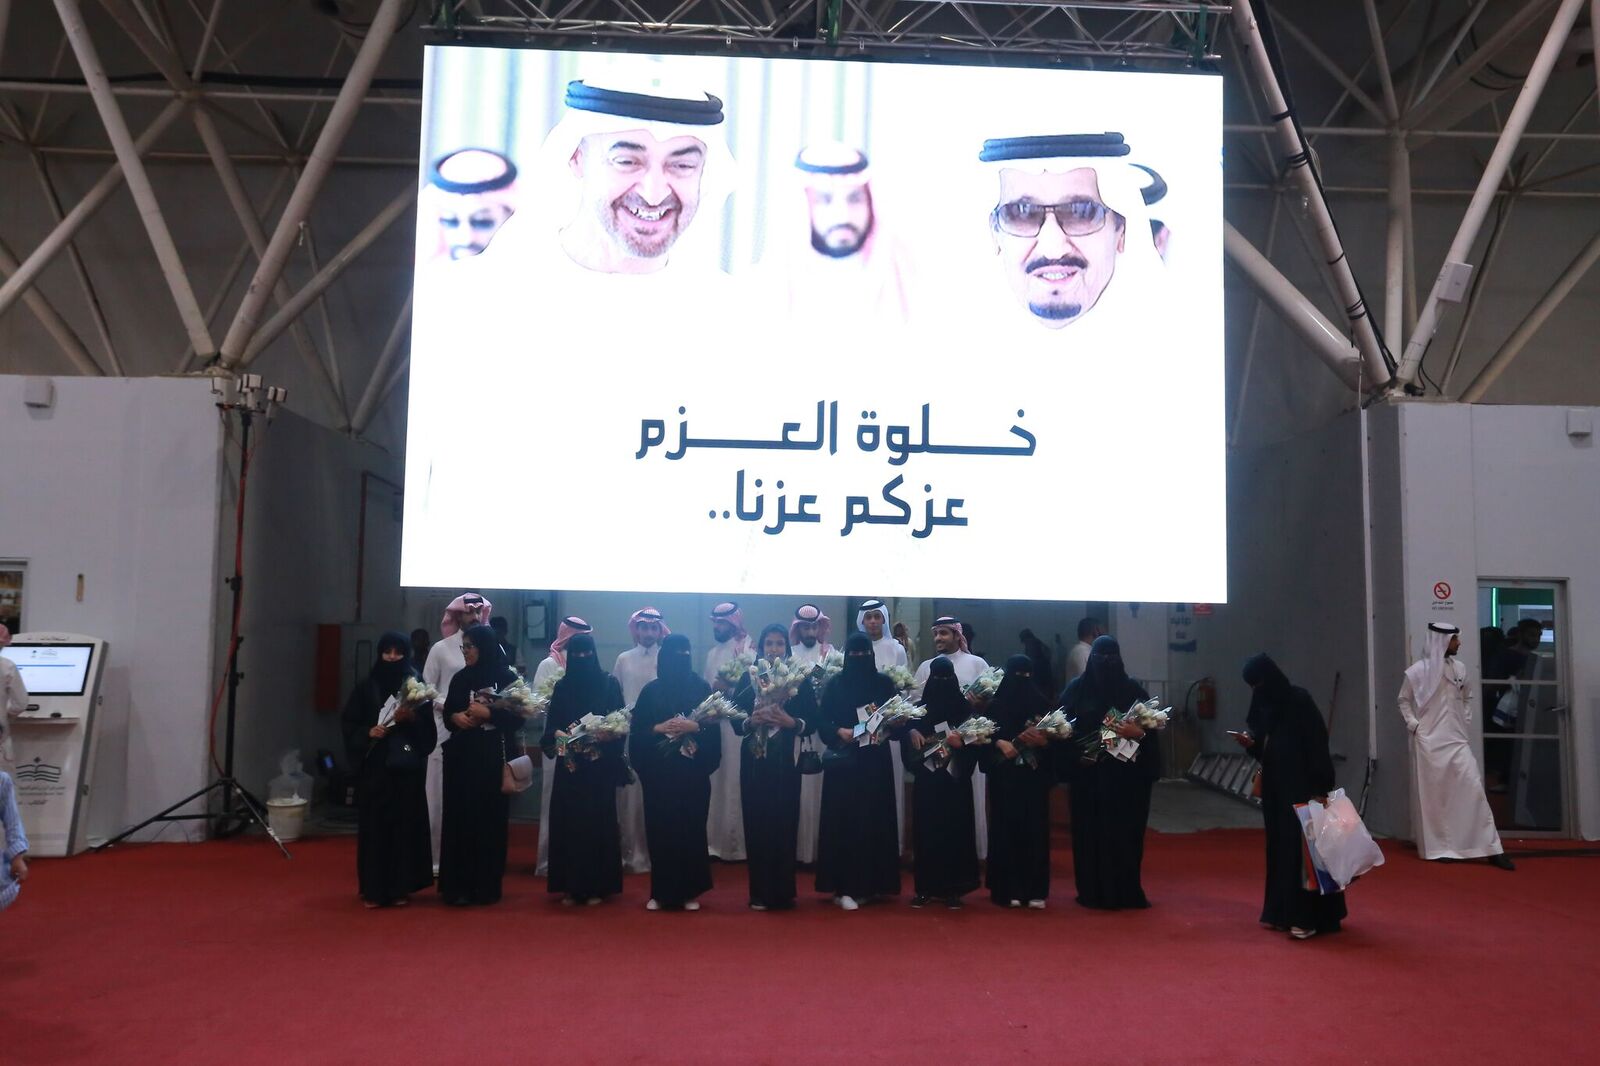 بالصور.. معرض الكتاب يوثق العلاقات السعودية الإماراتية في فيلم خلوة العزم